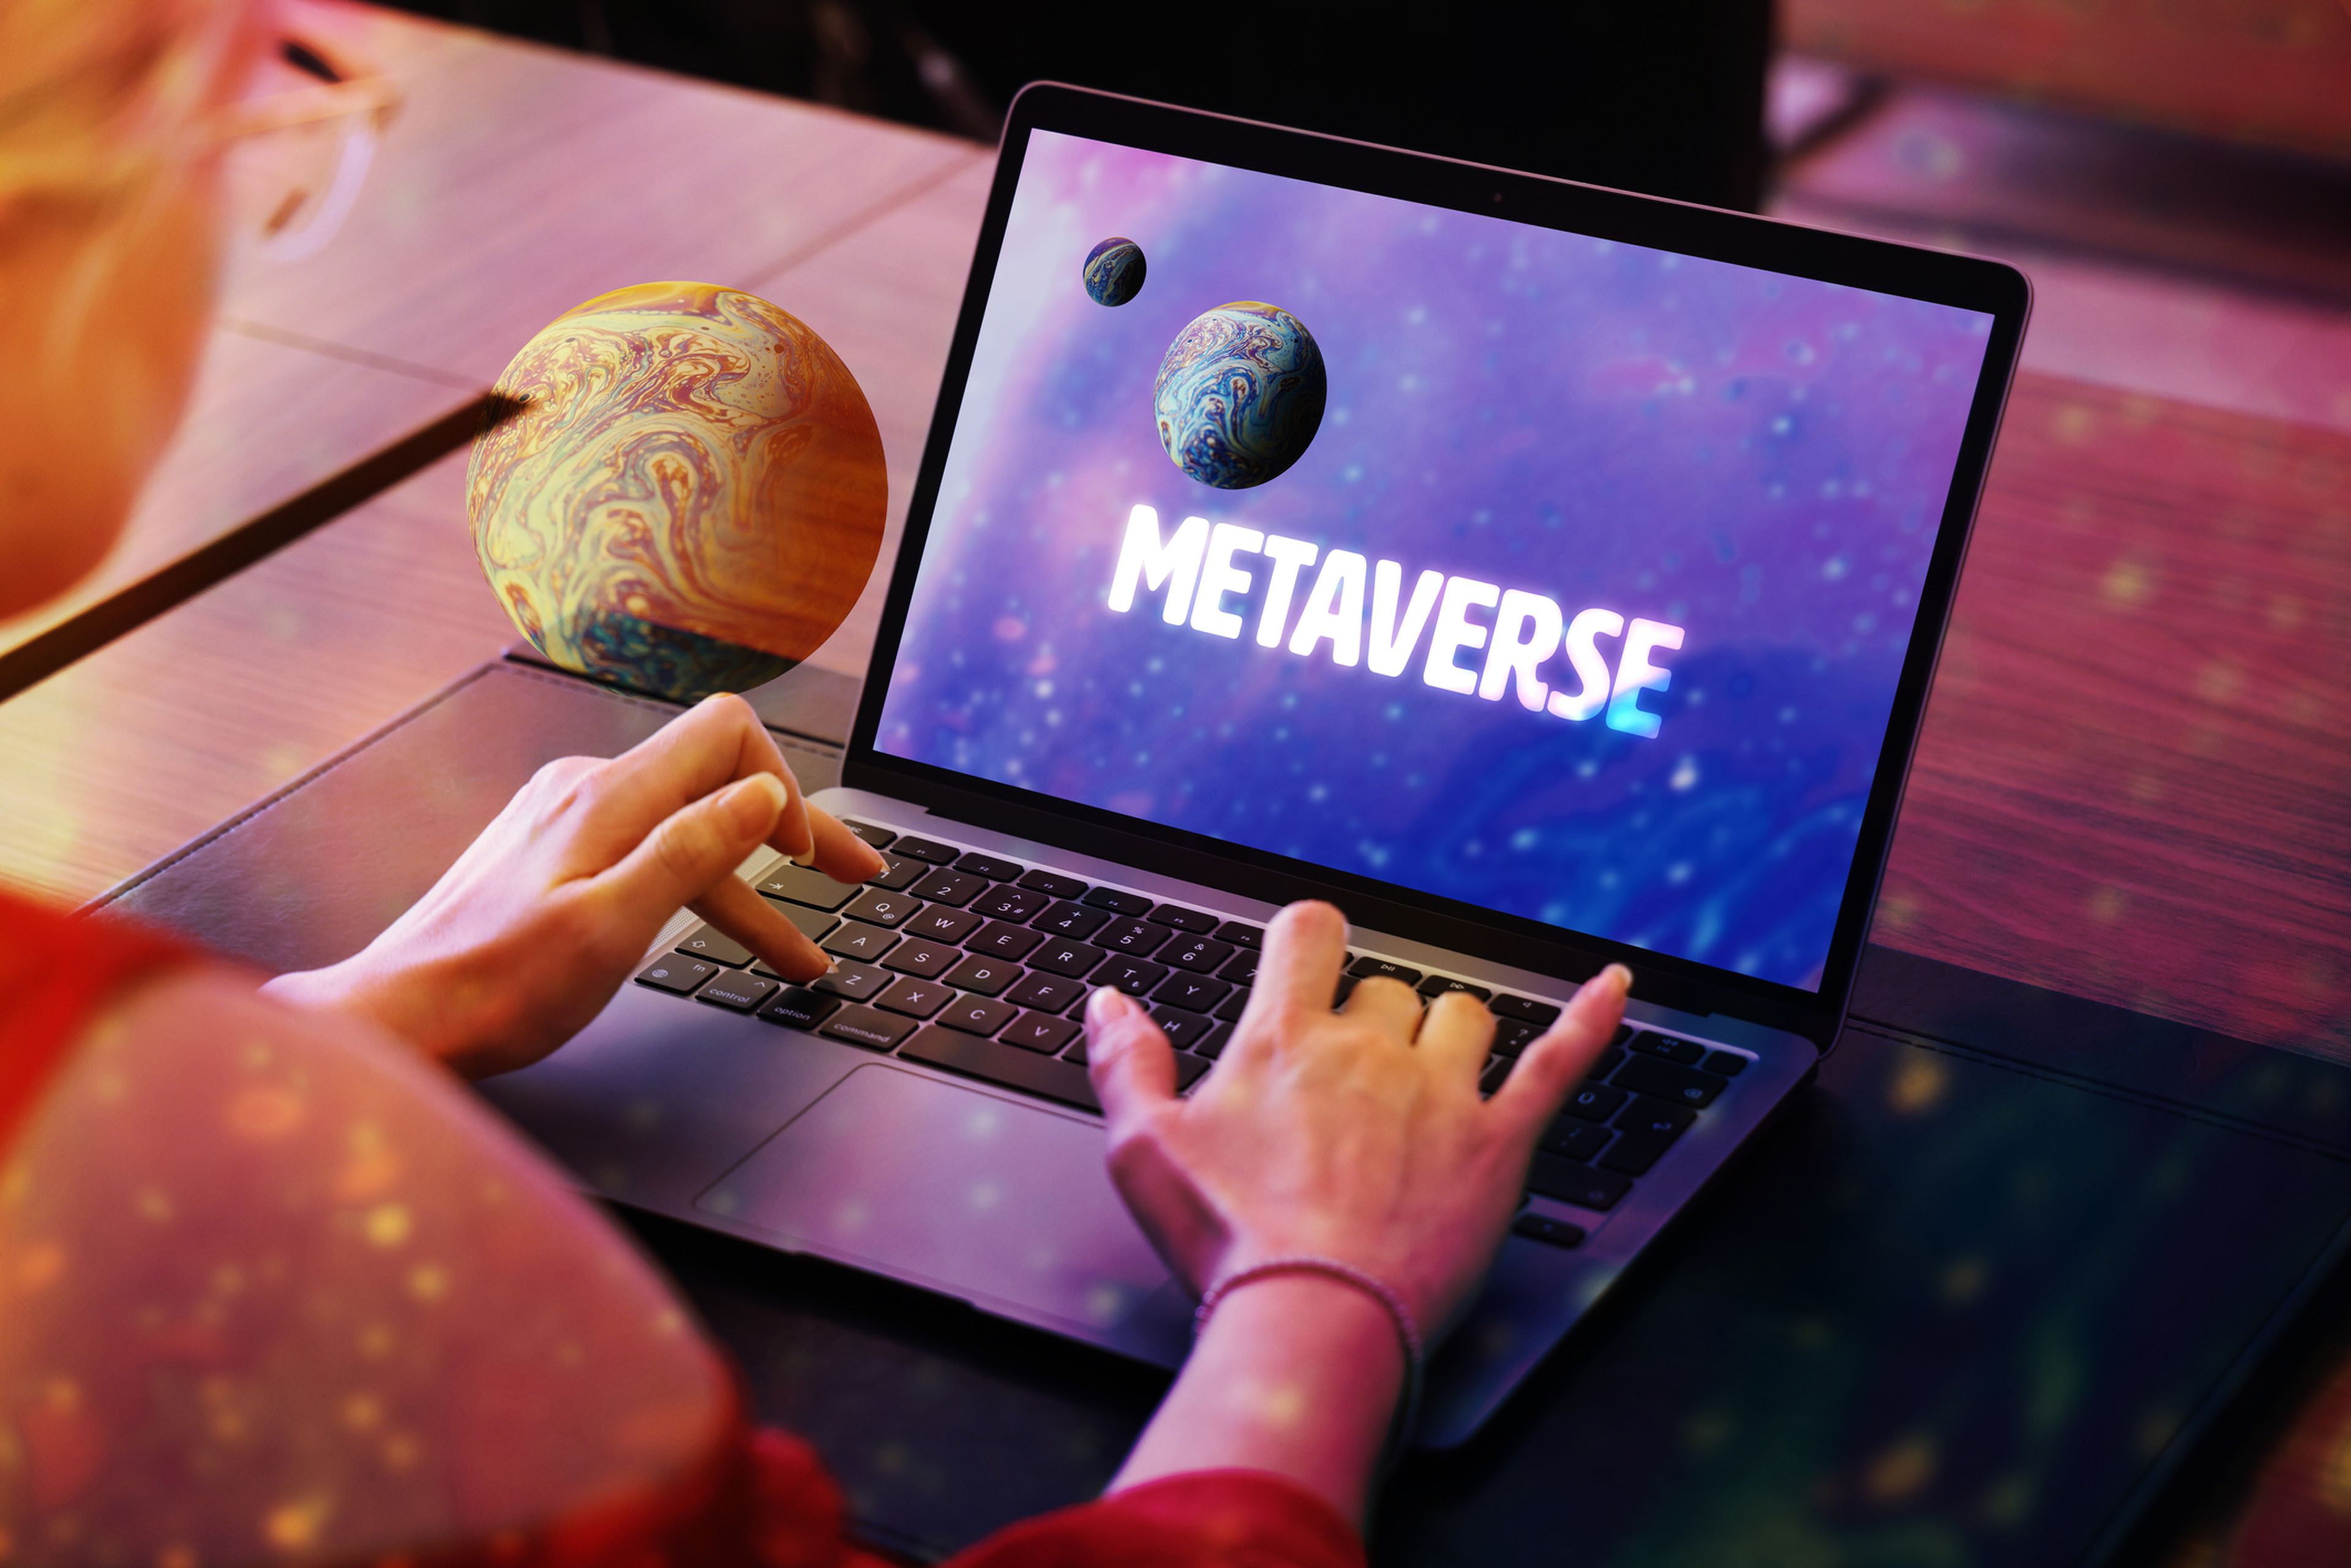 Una pantalla muestra la palabra metaverso en un ordenador portátil